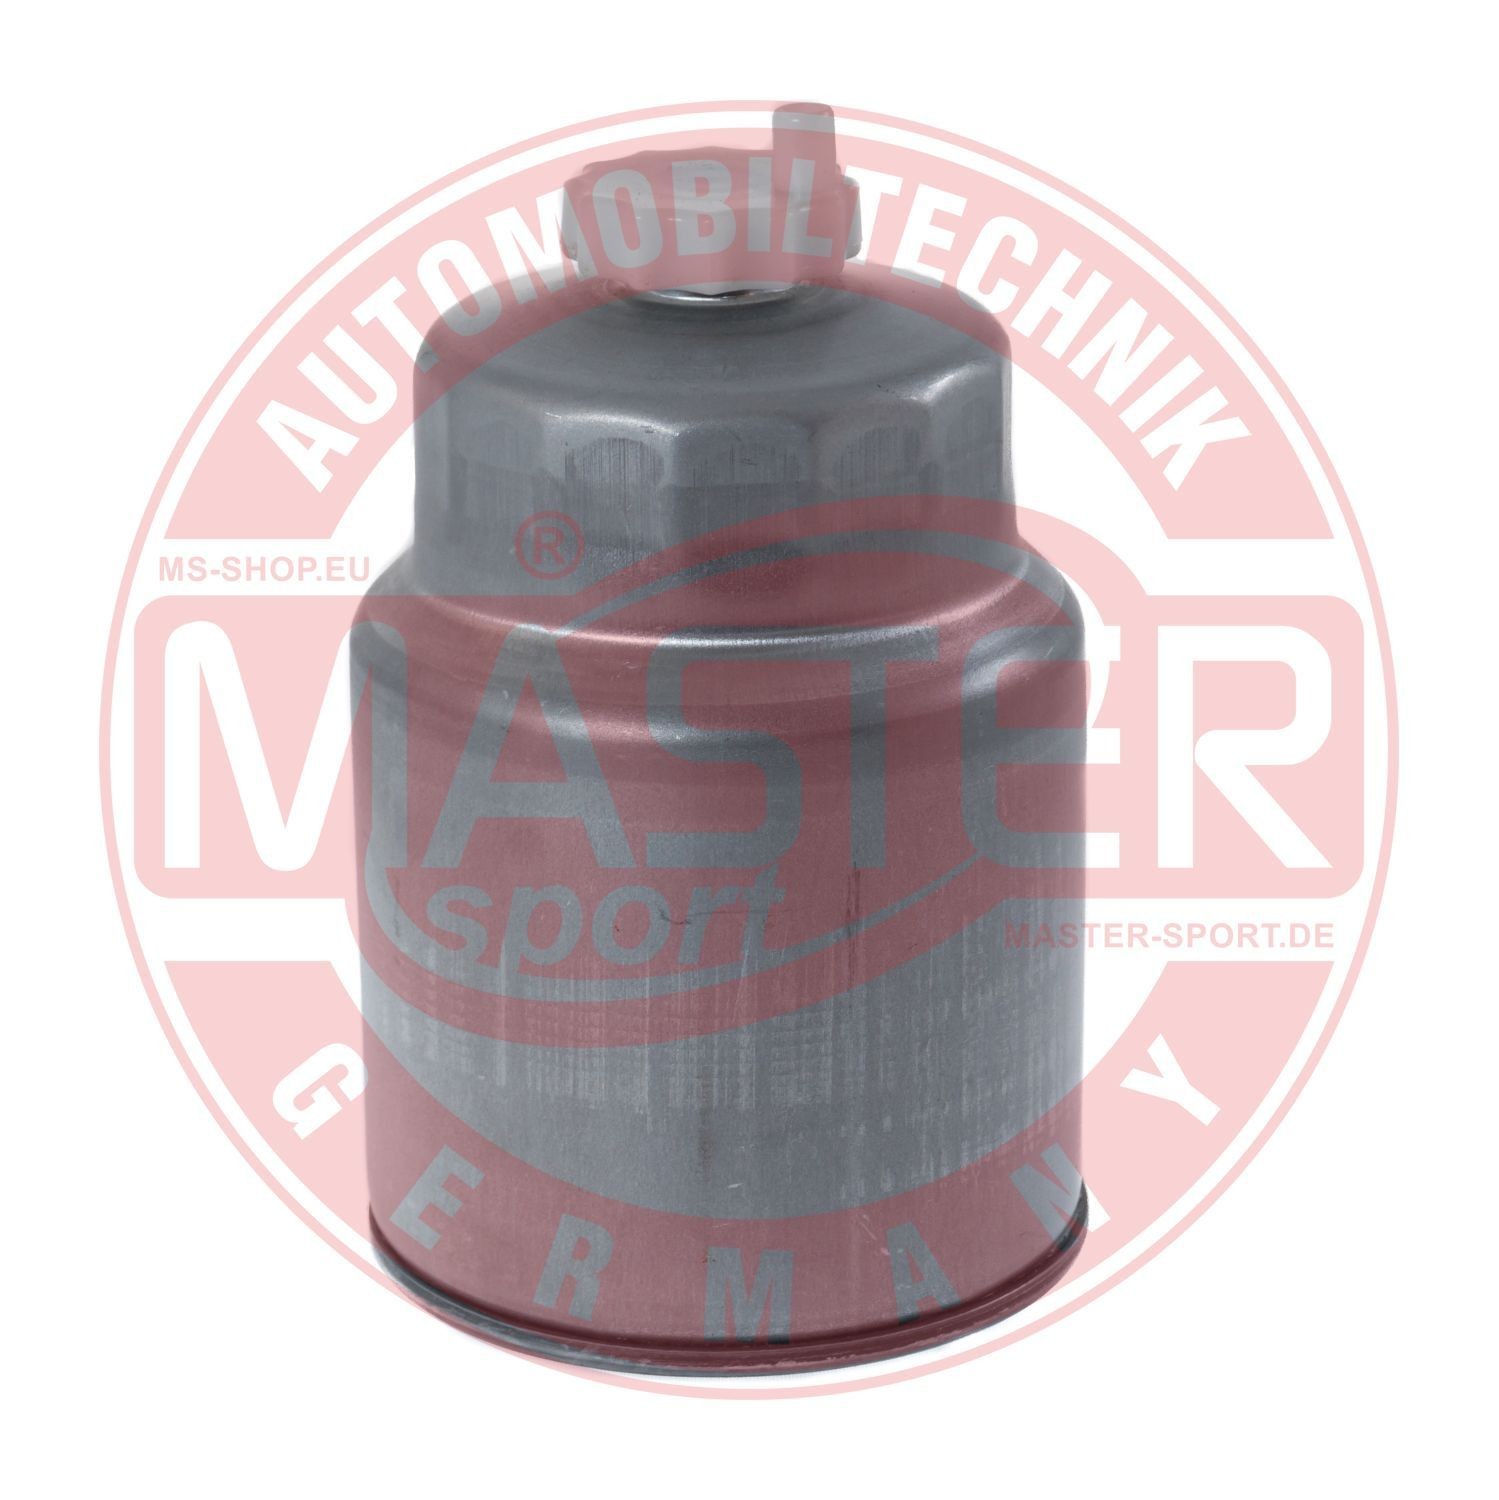 Fuel filter MASTER-SPORT Spin-on Filter - 940/22-KF-PCS-MS